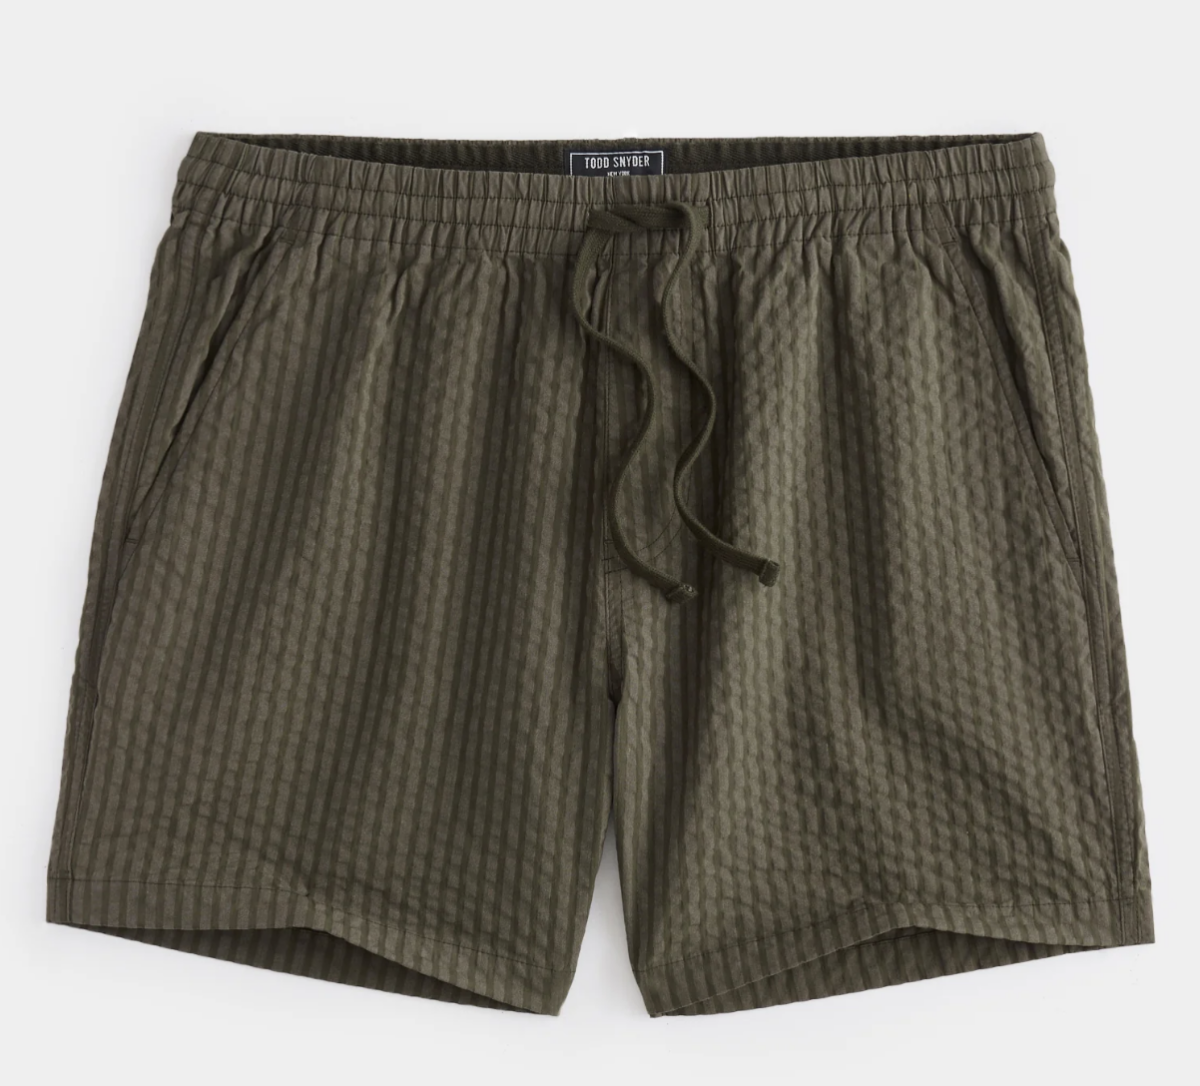 luxury designer shorts for men